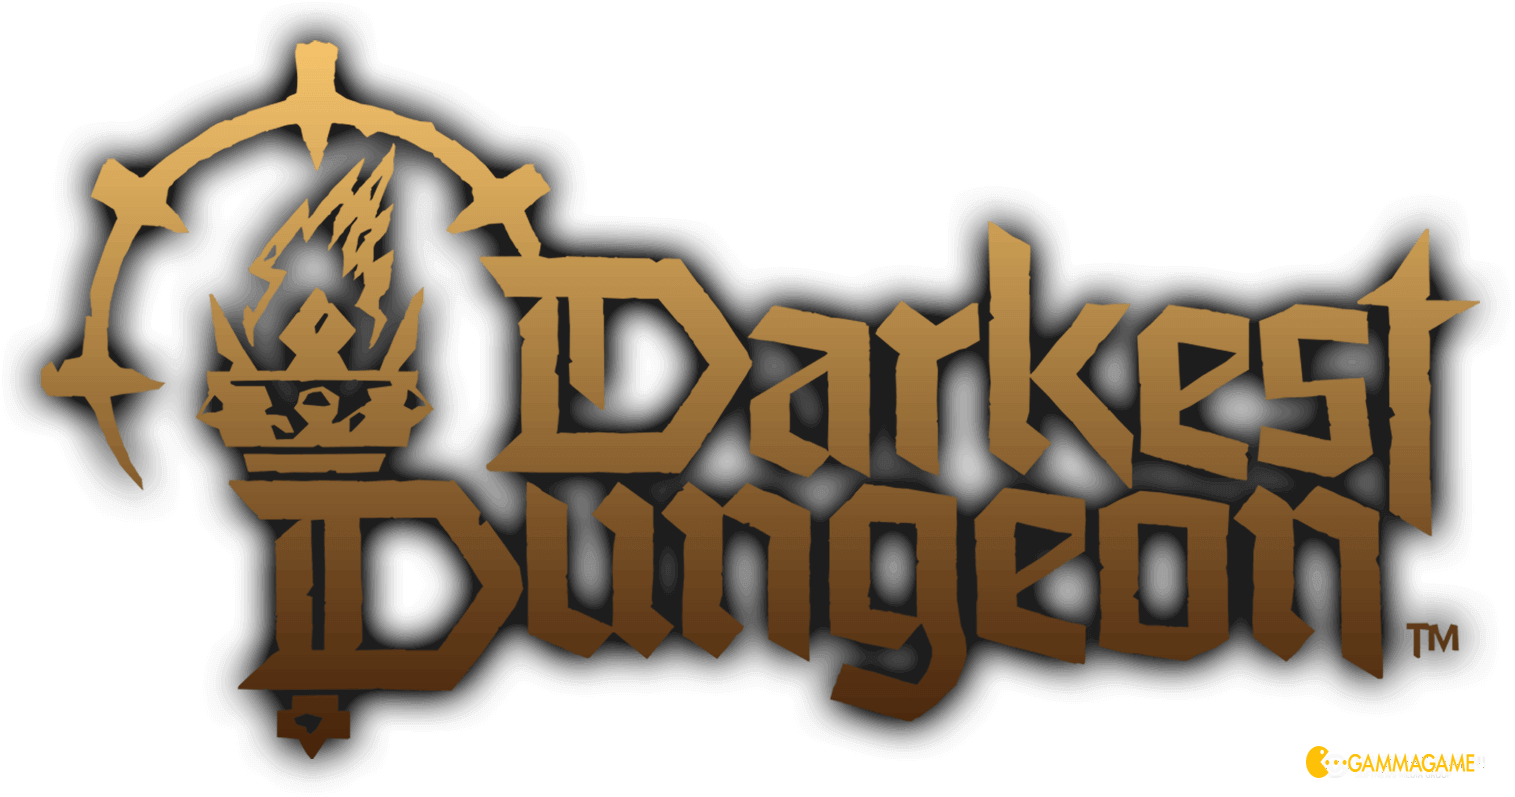   Darkest Dungeon 2